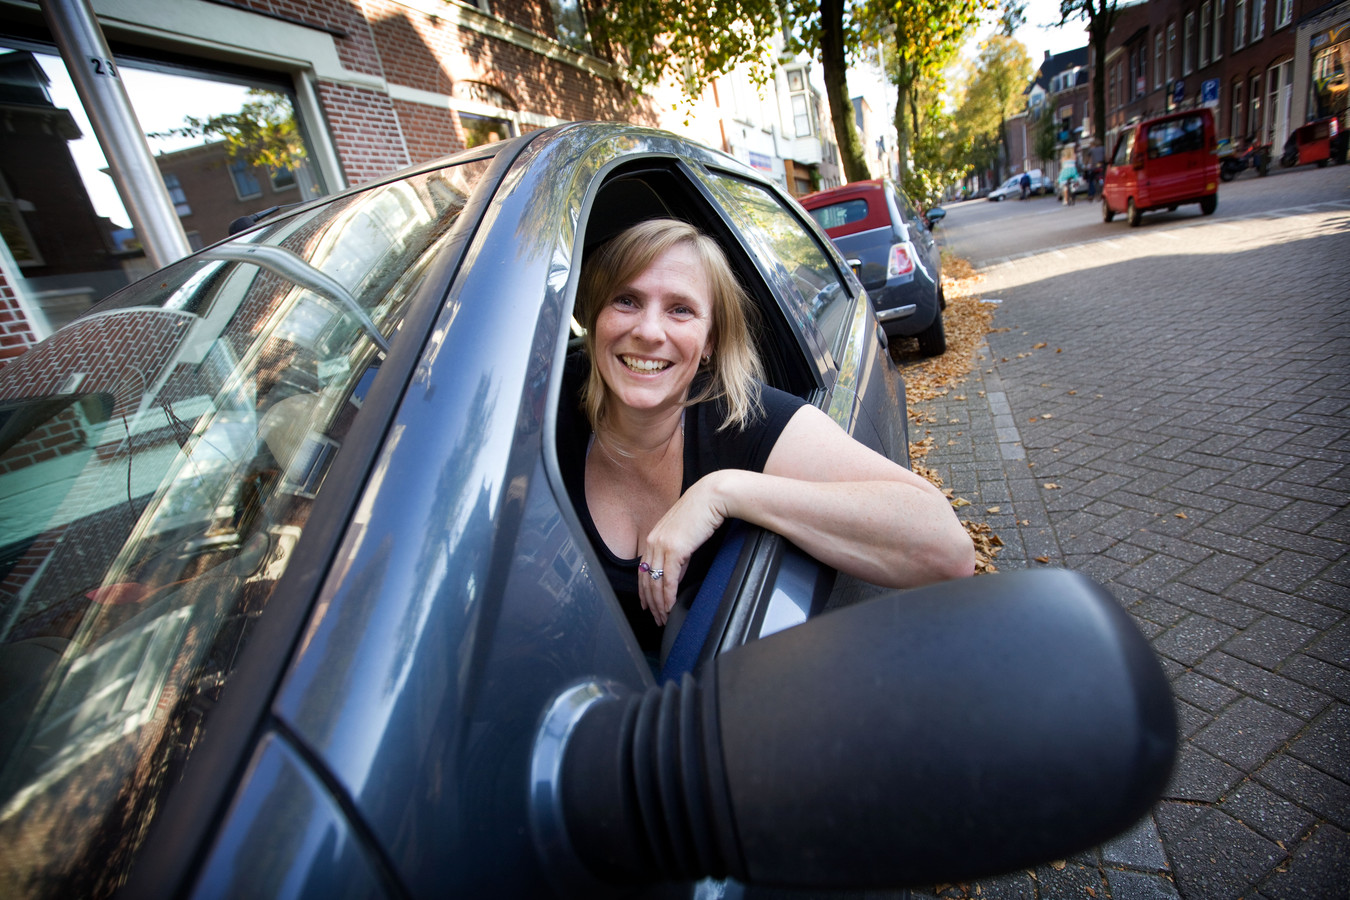 Annemarie Determan is in 2011 de eerste die via SnappCar haar auto verhuurt.